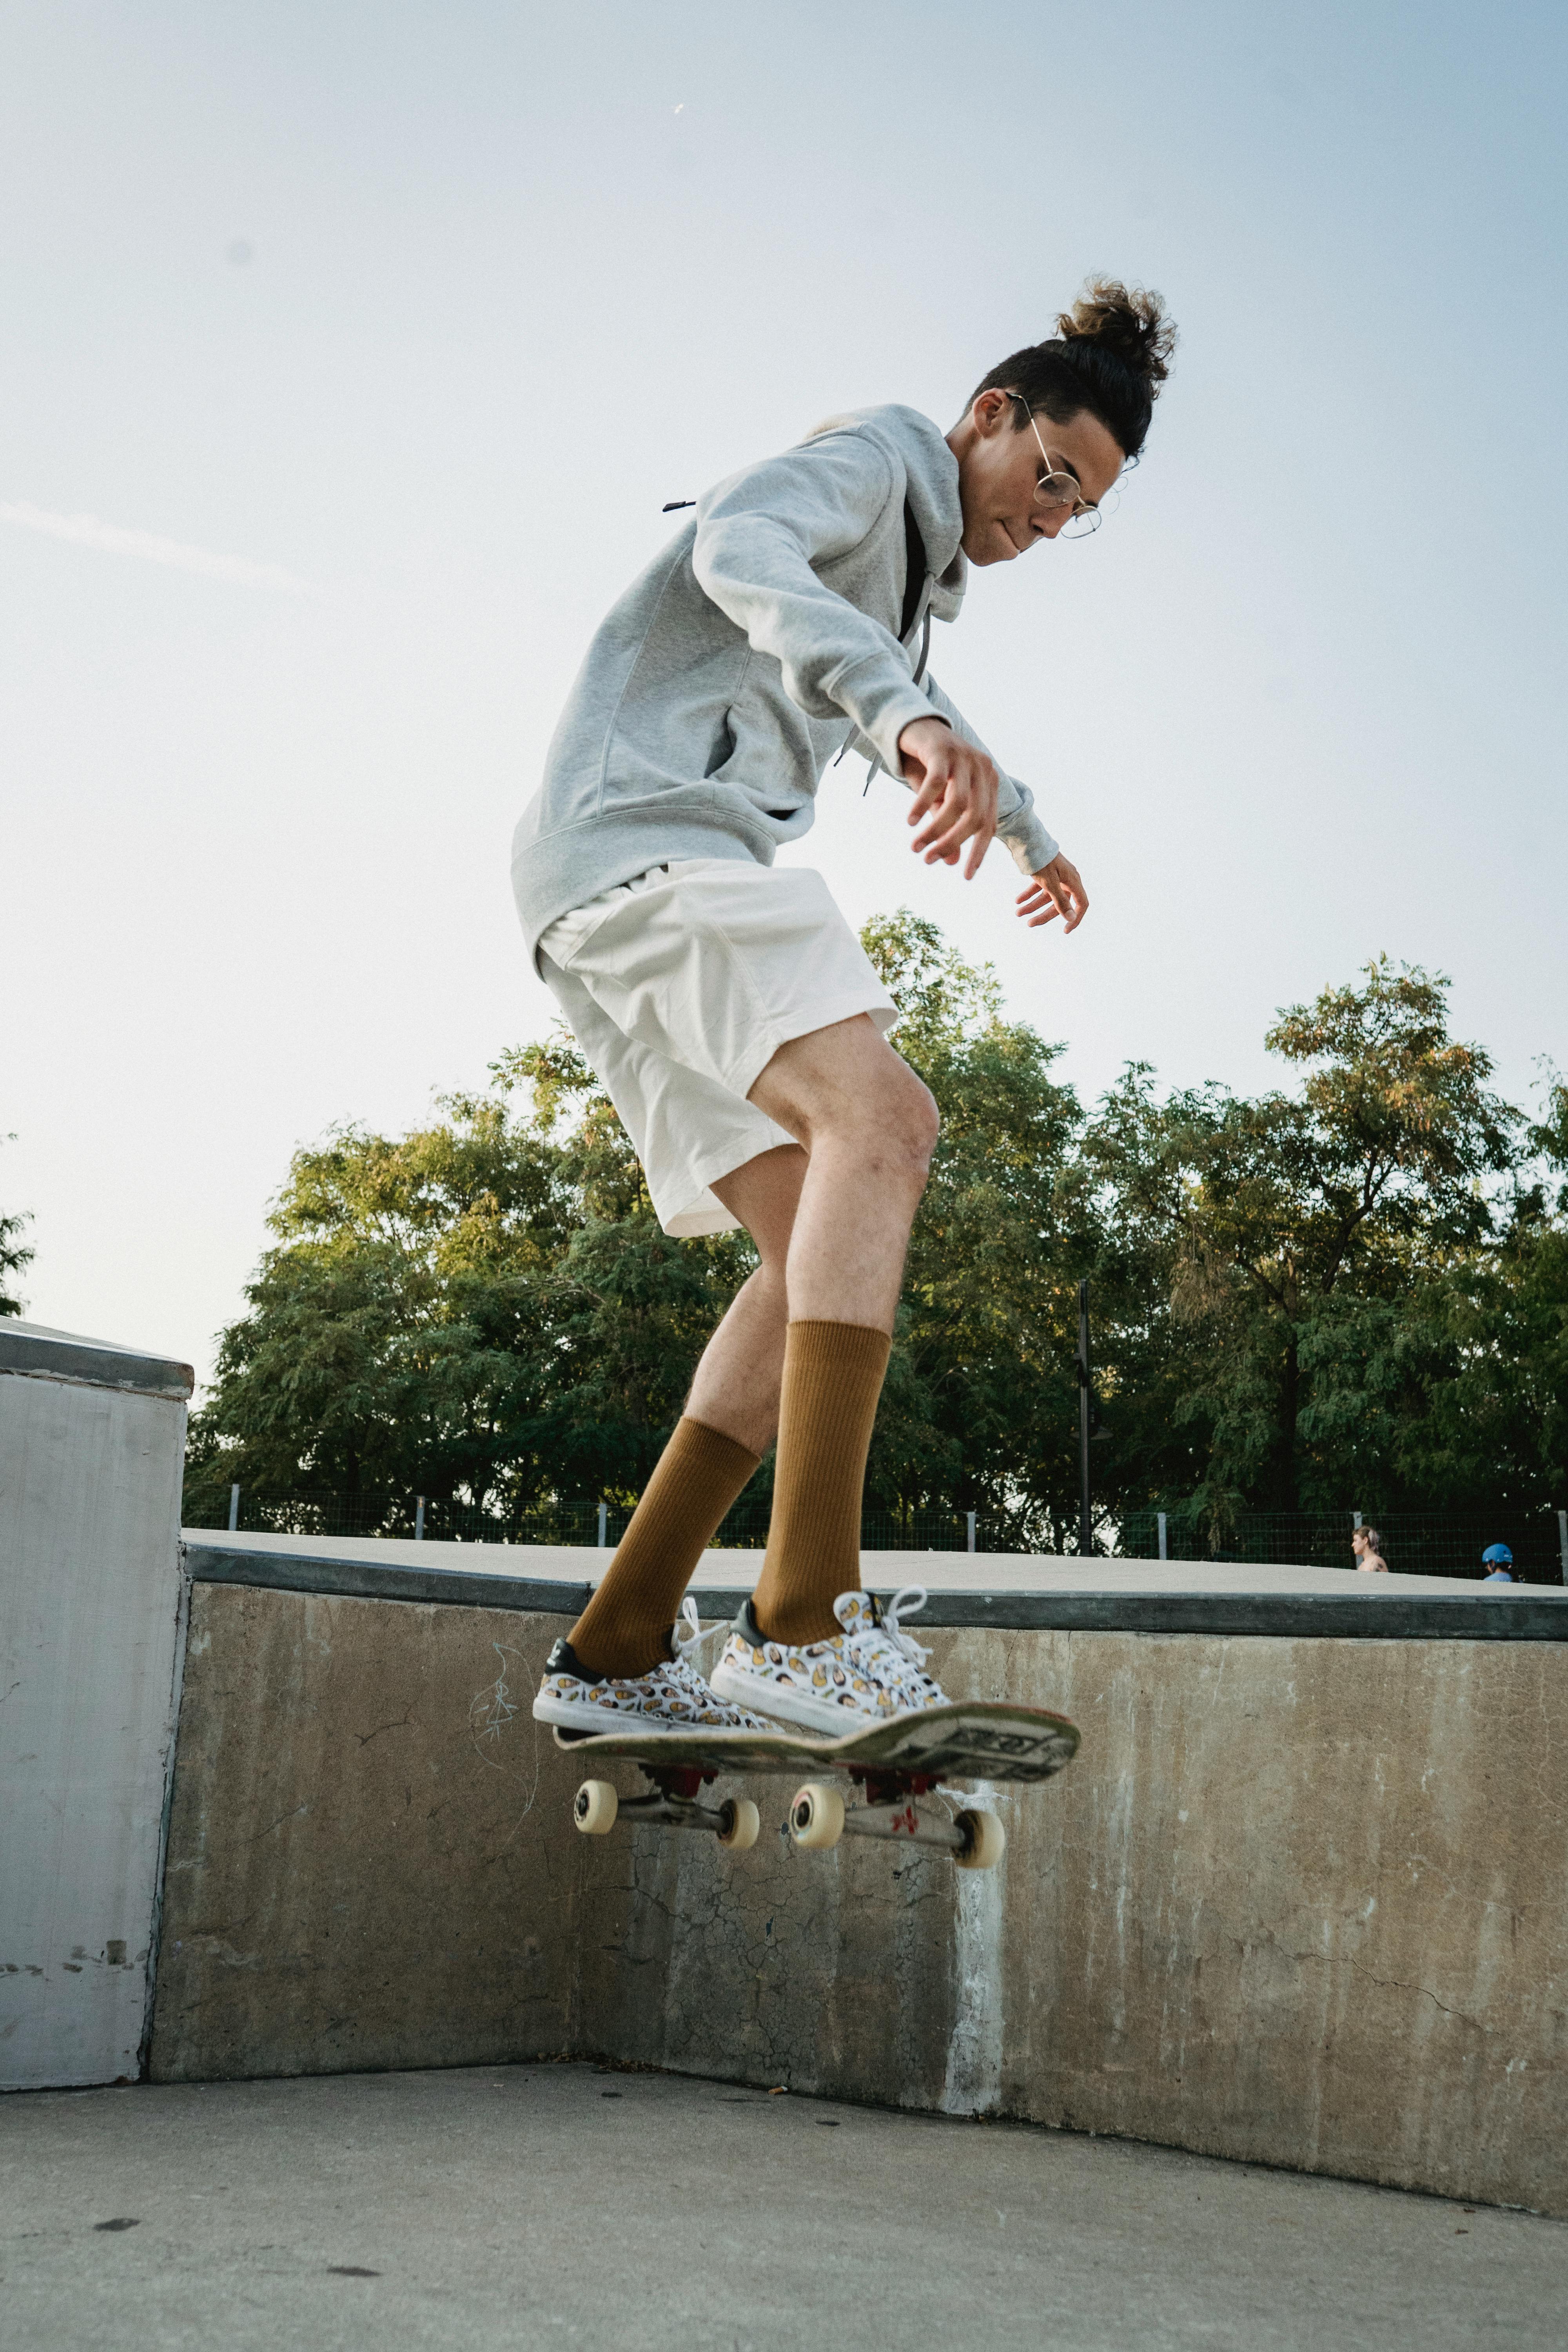 amazing skateboarding photography